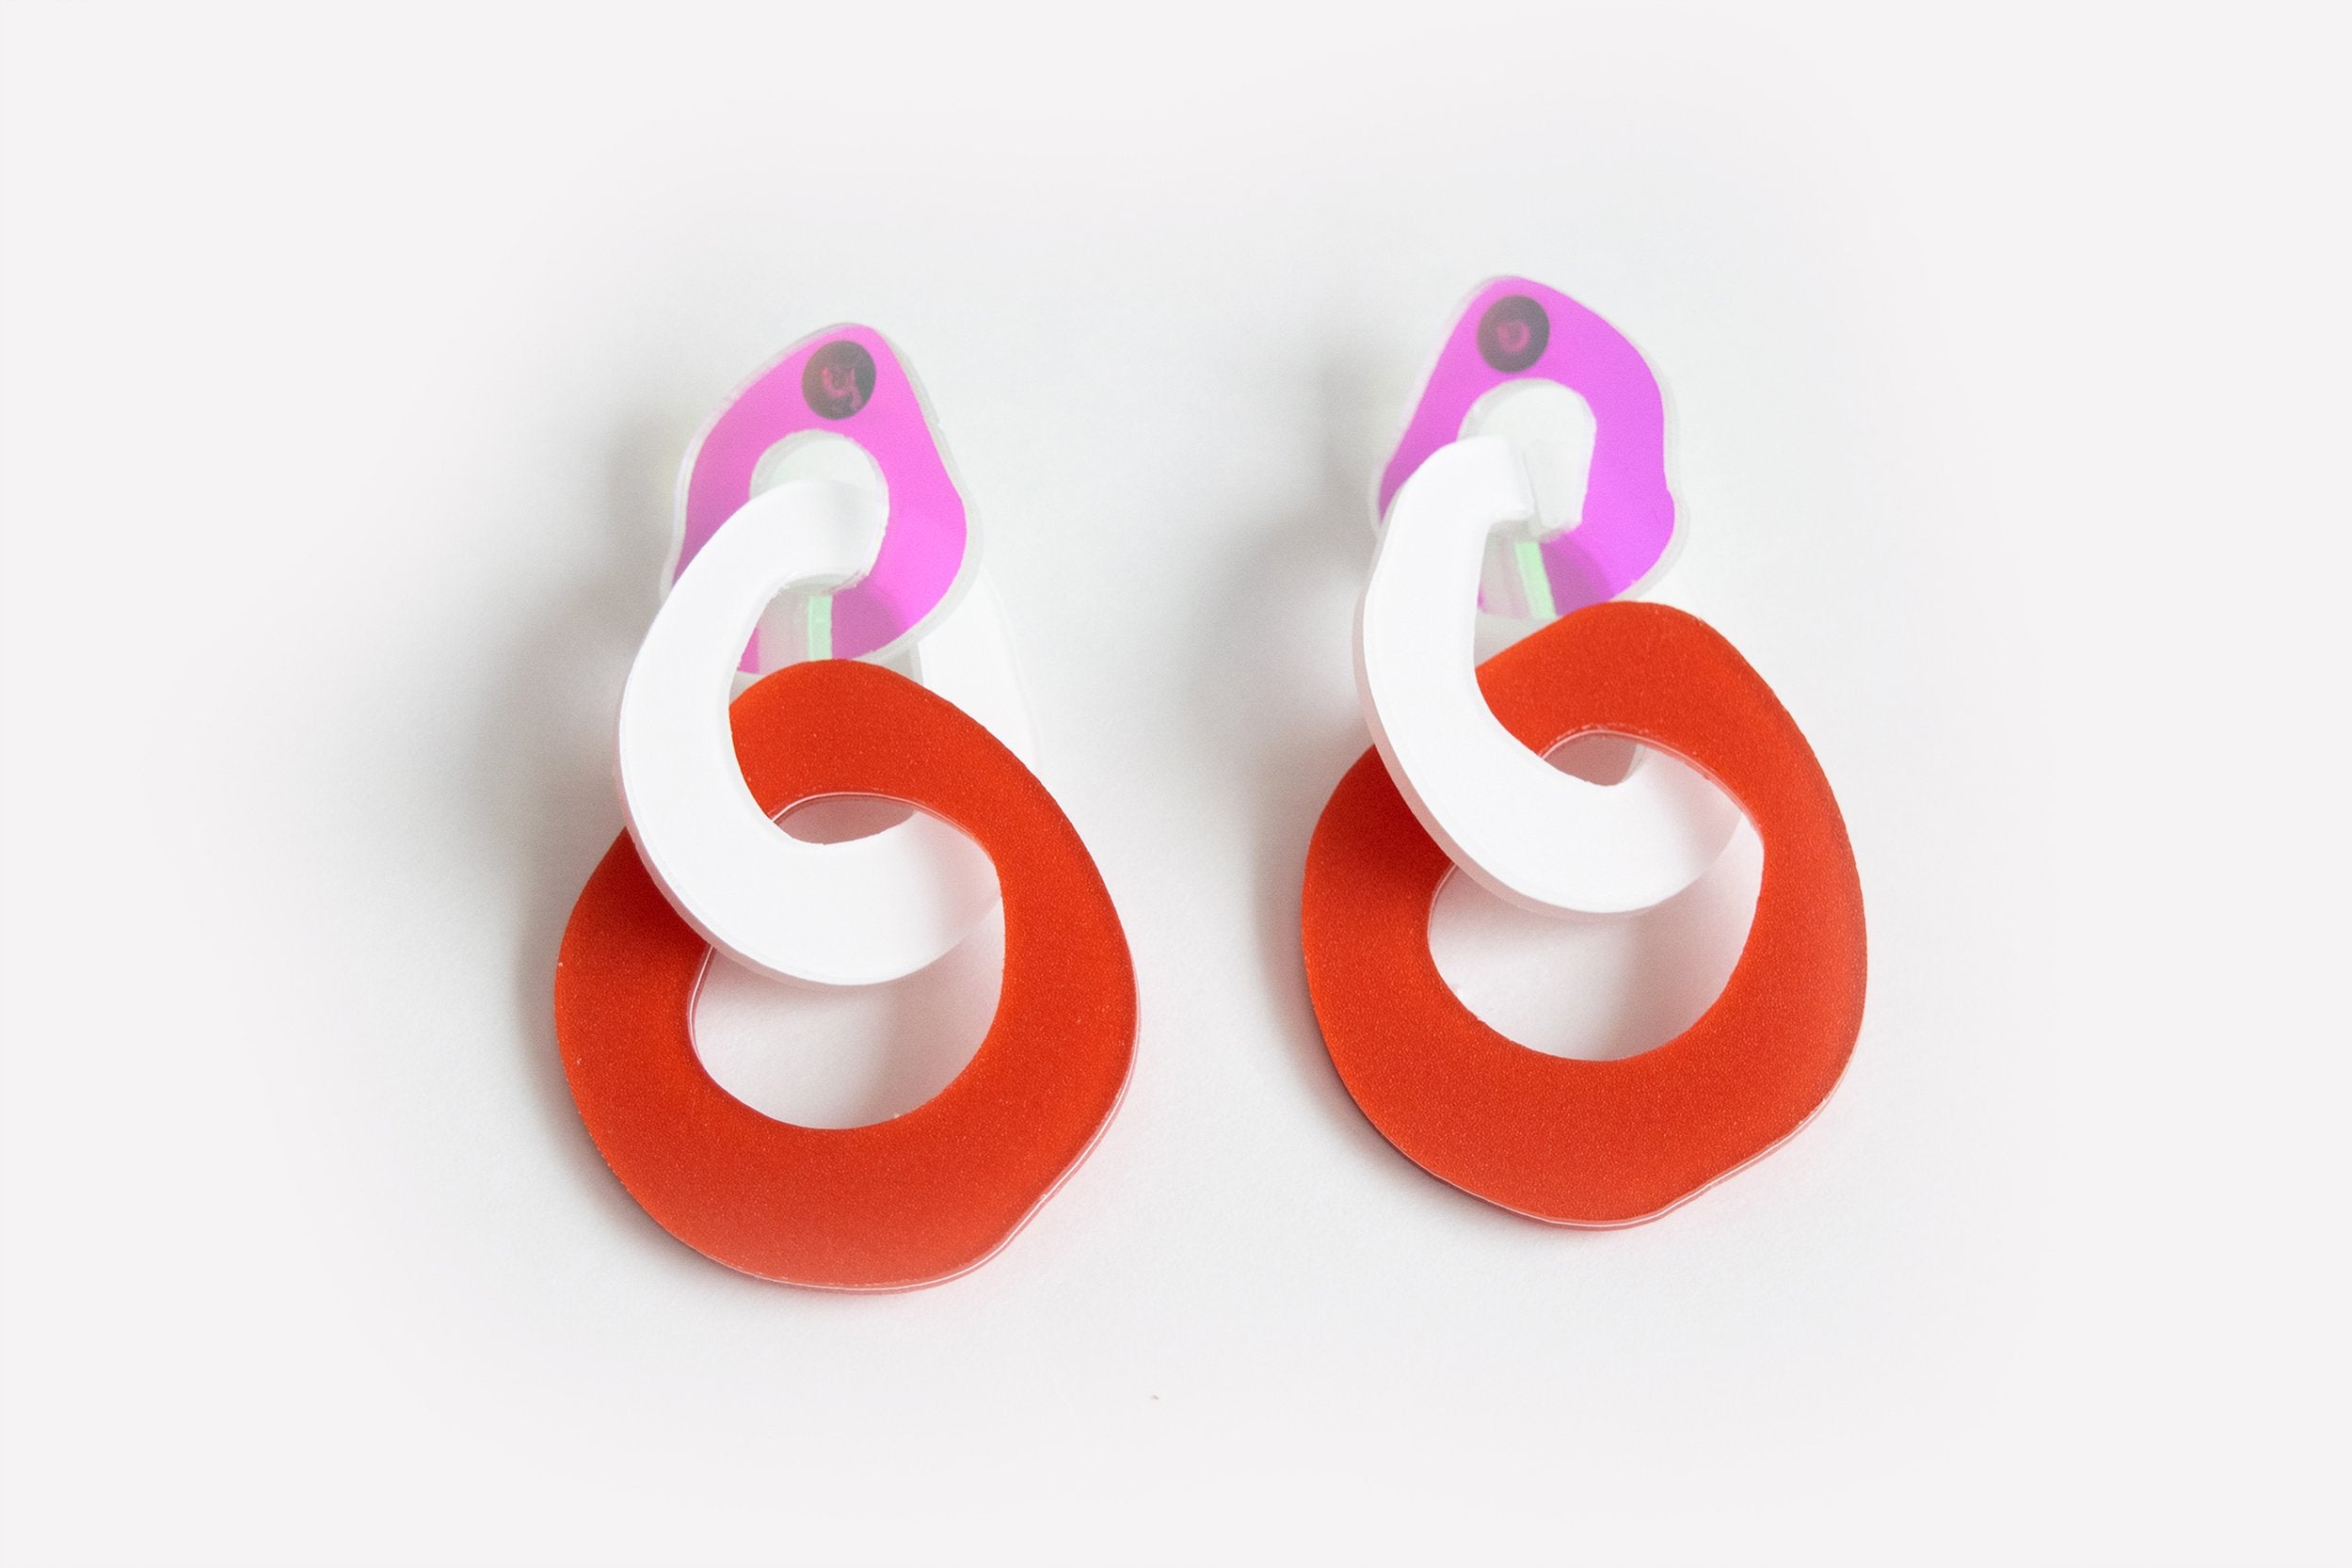 Ecoresin Earrings - Triple Link